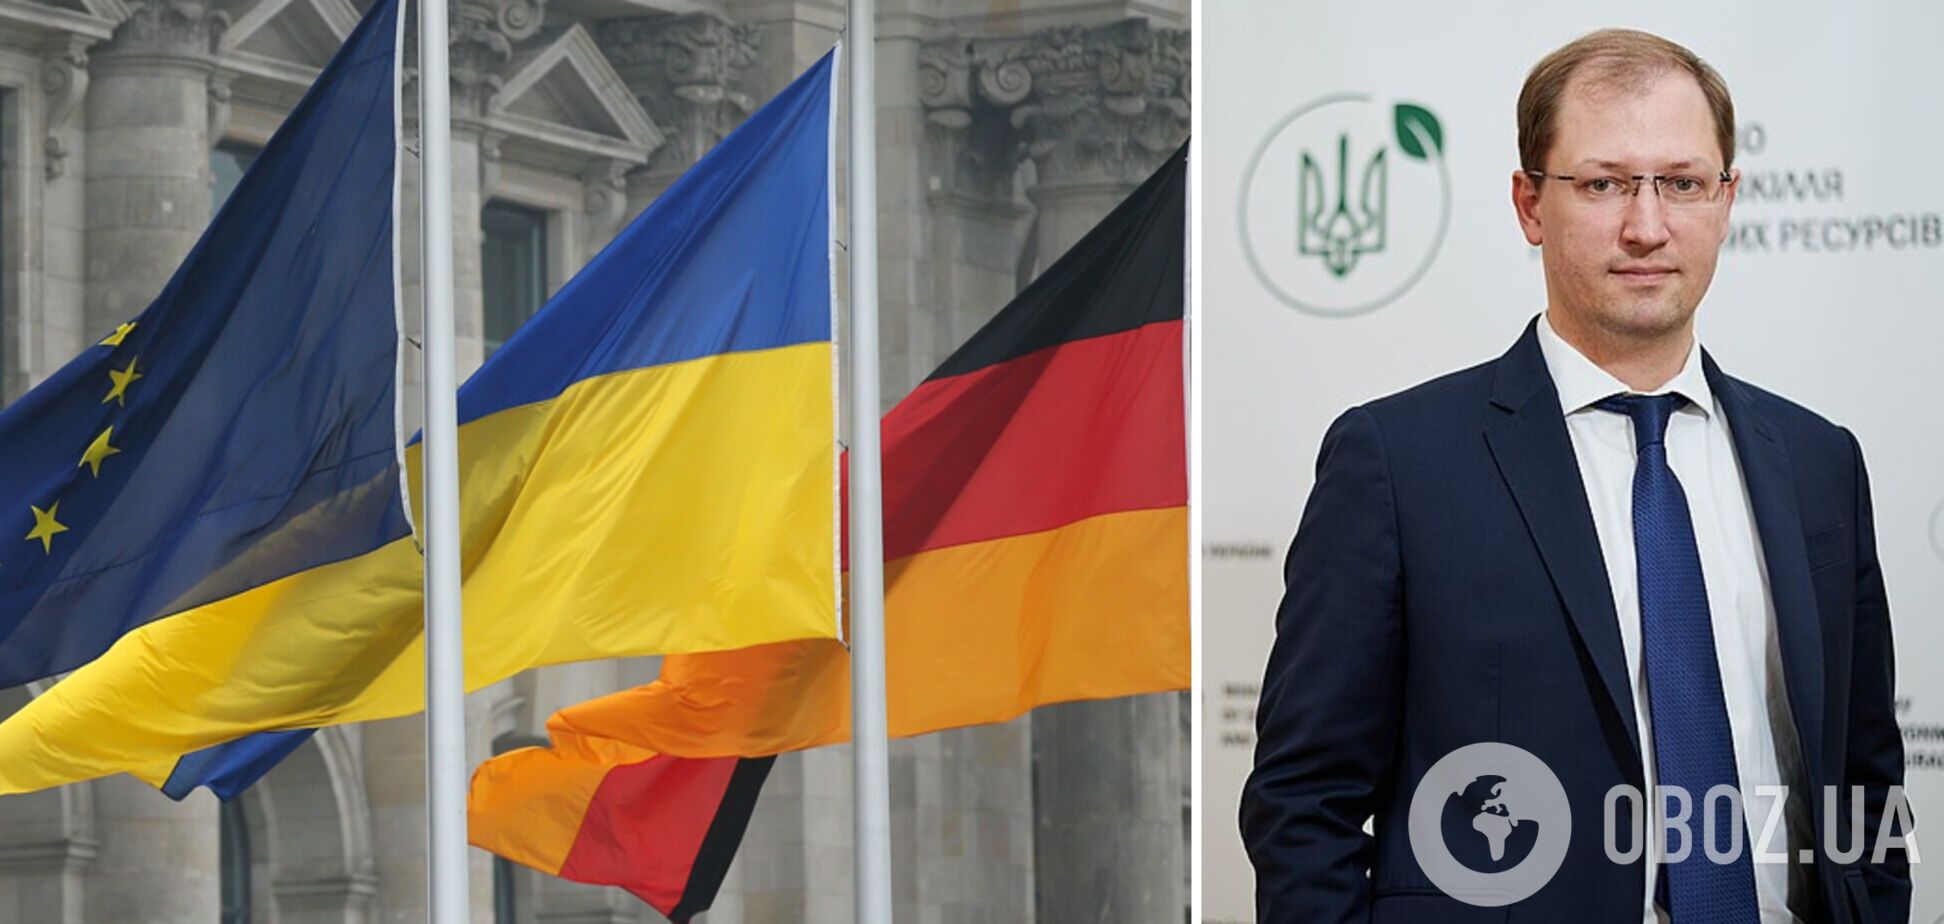 ЕС и Германия помогут Украине достичь целей по декарбонизации, – Стрелец